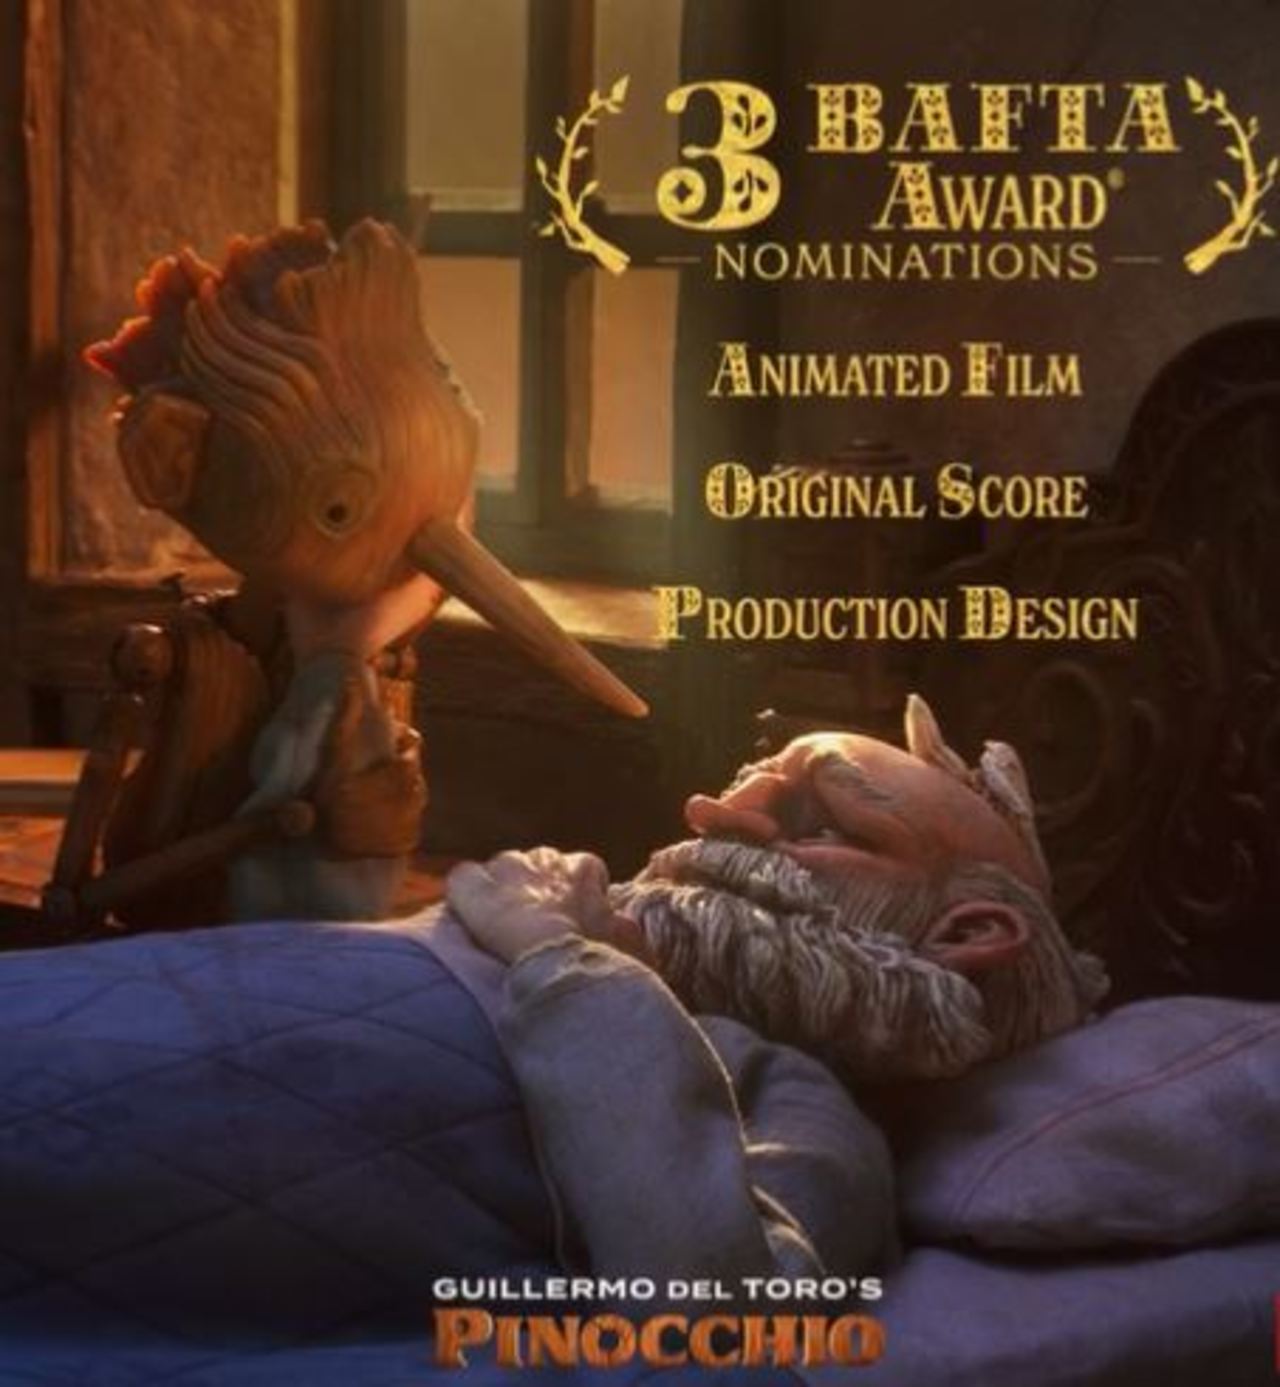 Nominaciones. Pinocchio compite como Mejor Animación, Mejor Banda Sonora y Mejor Diseño de Producción.